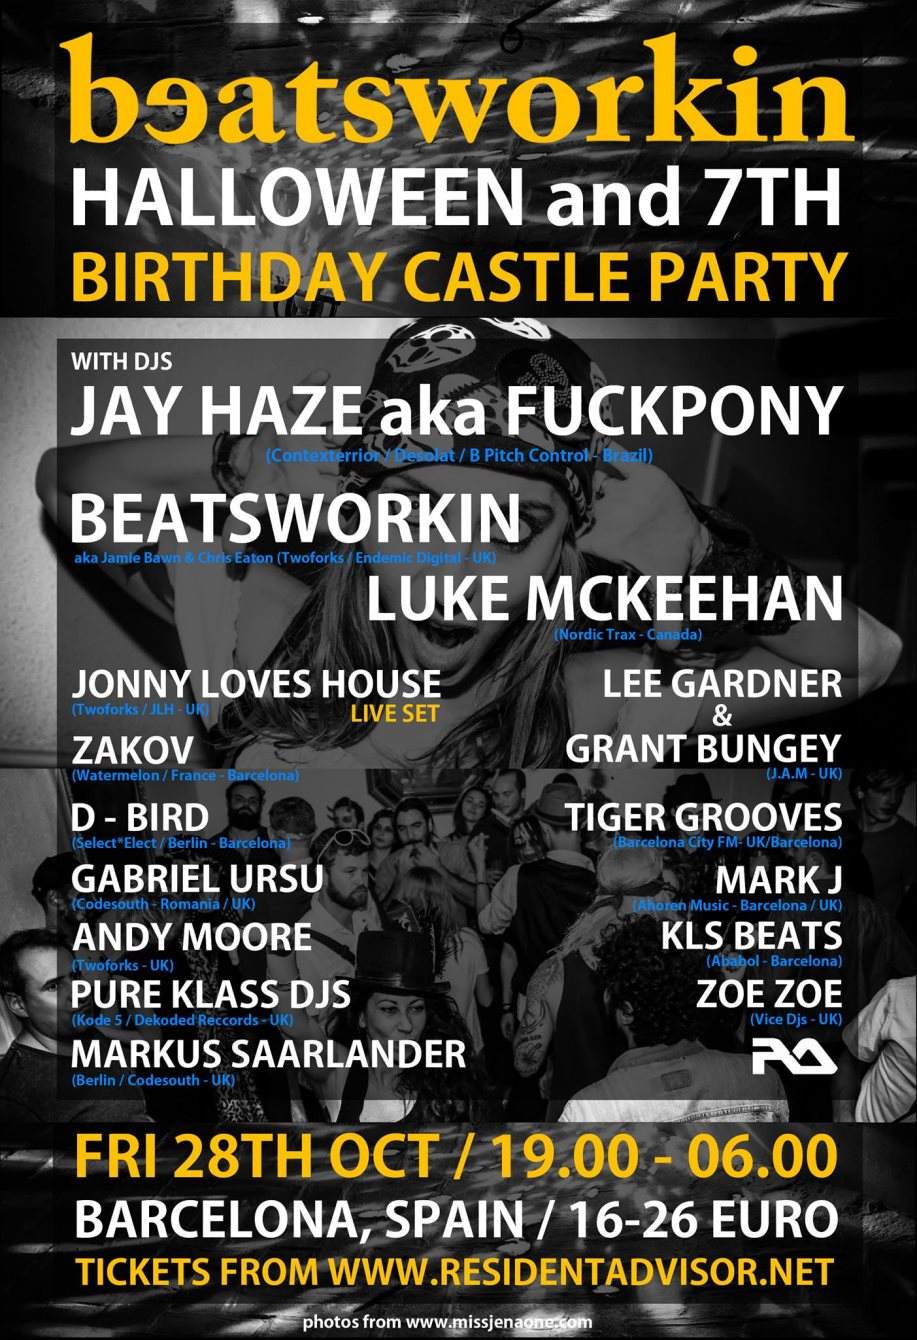 Beatsworkin Halloween Castle Party and 7th Birthday with Jay Haze/Fuckpony - Página frontal